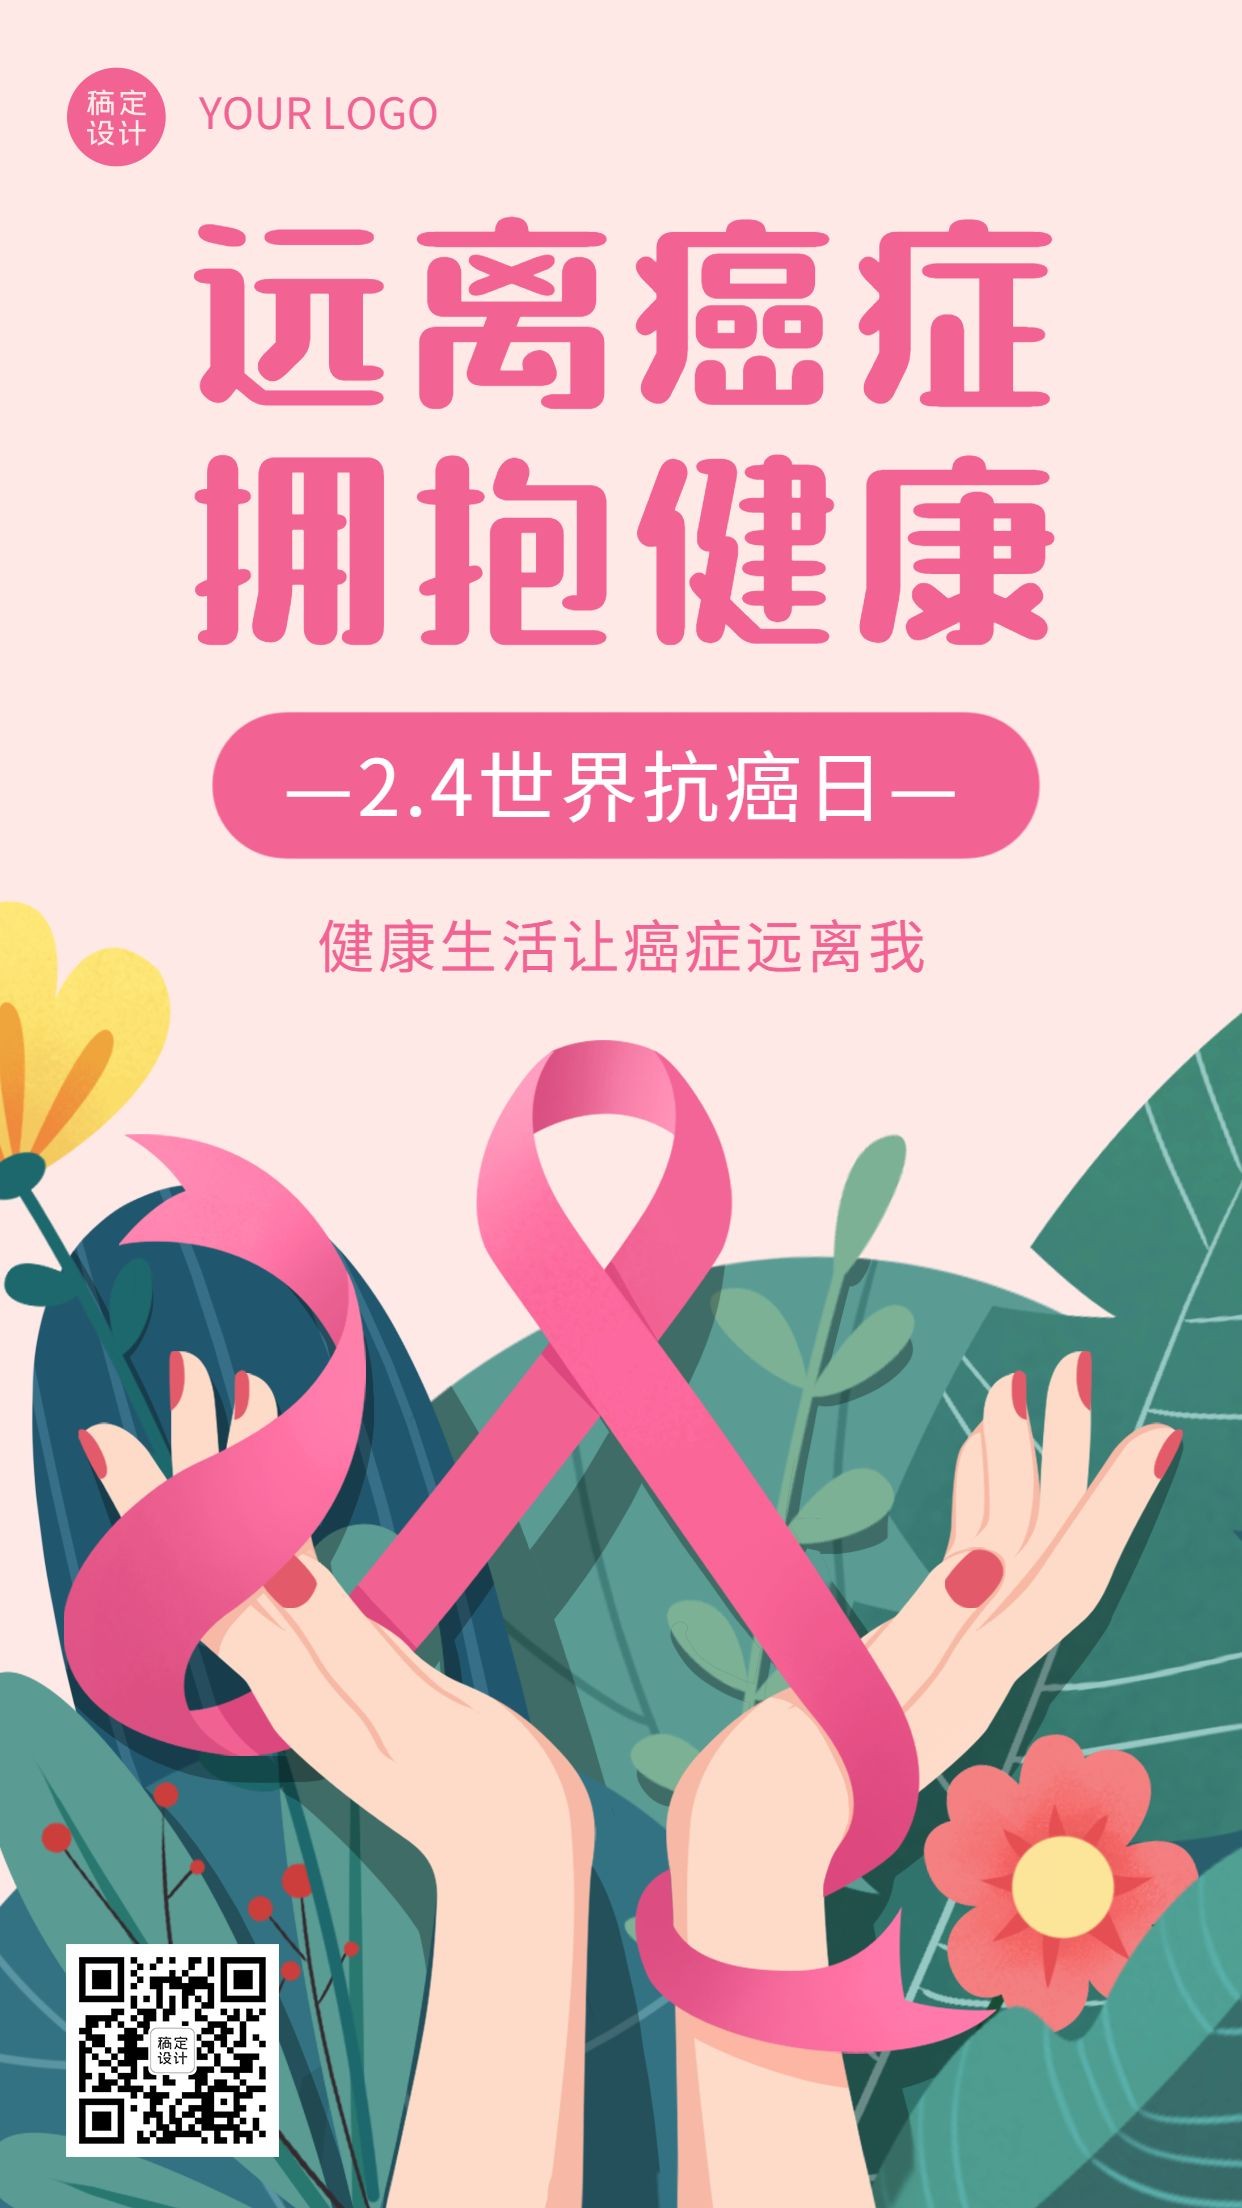 2.4世界抗癌日节日宣传创意手绘手机海报预览效果